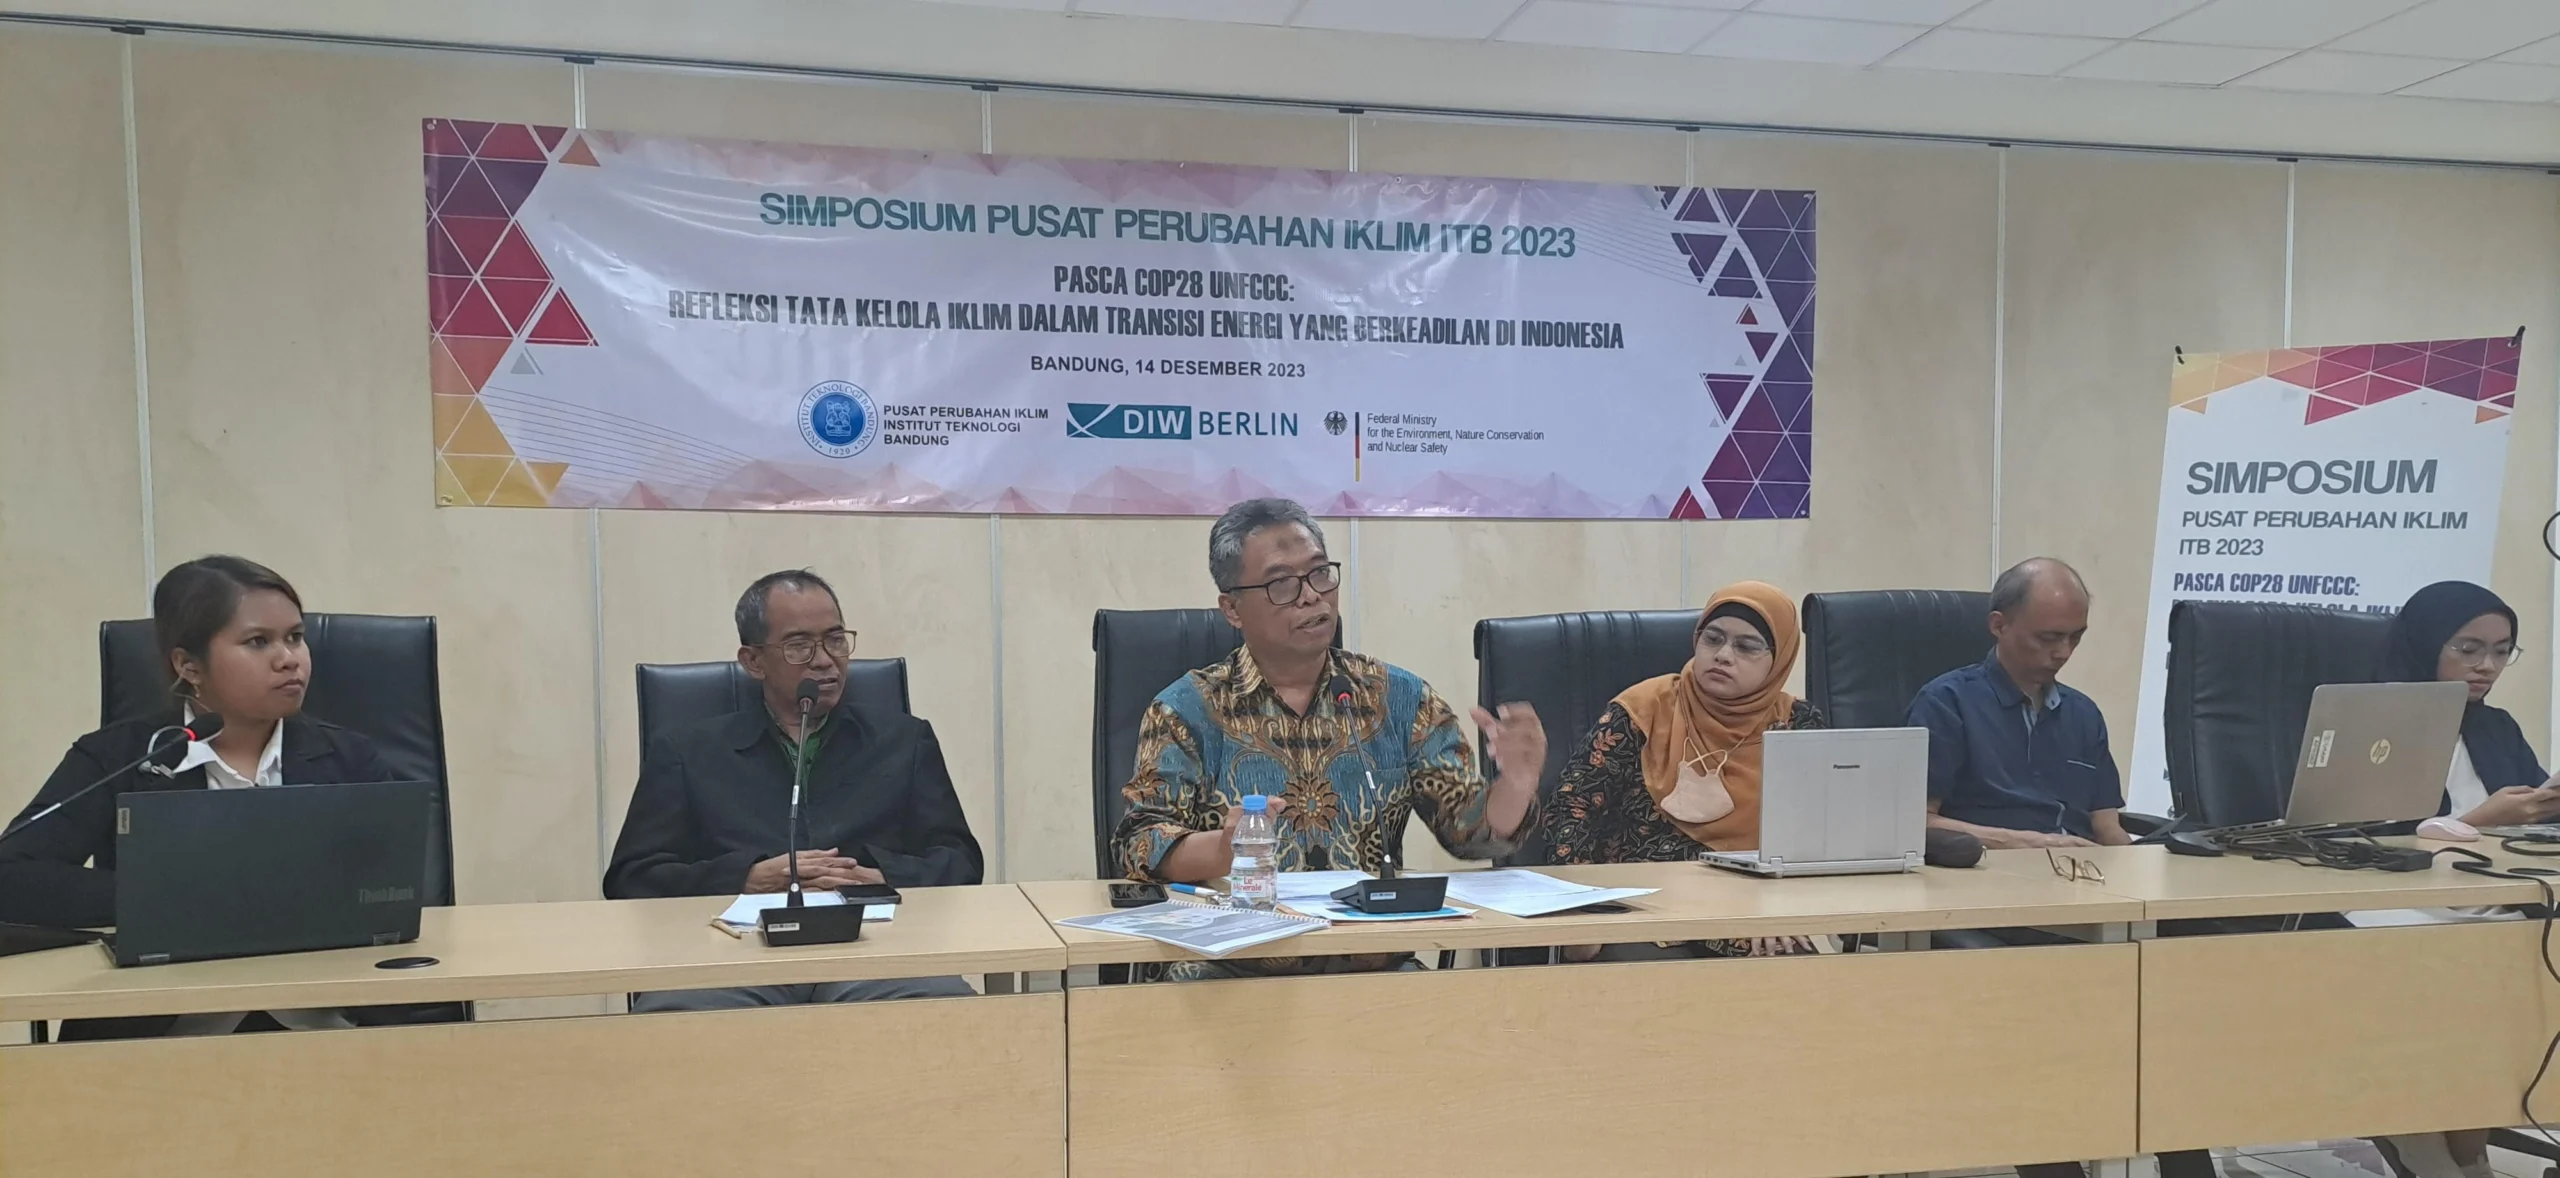 Simposium Pusat Perubahan Iklim ITB 2023: Refleksi Tata Kelola Iklim Dalam Transisi Energi yang Berkeadilan di Indonesia Pasca COP28 UNFCCC